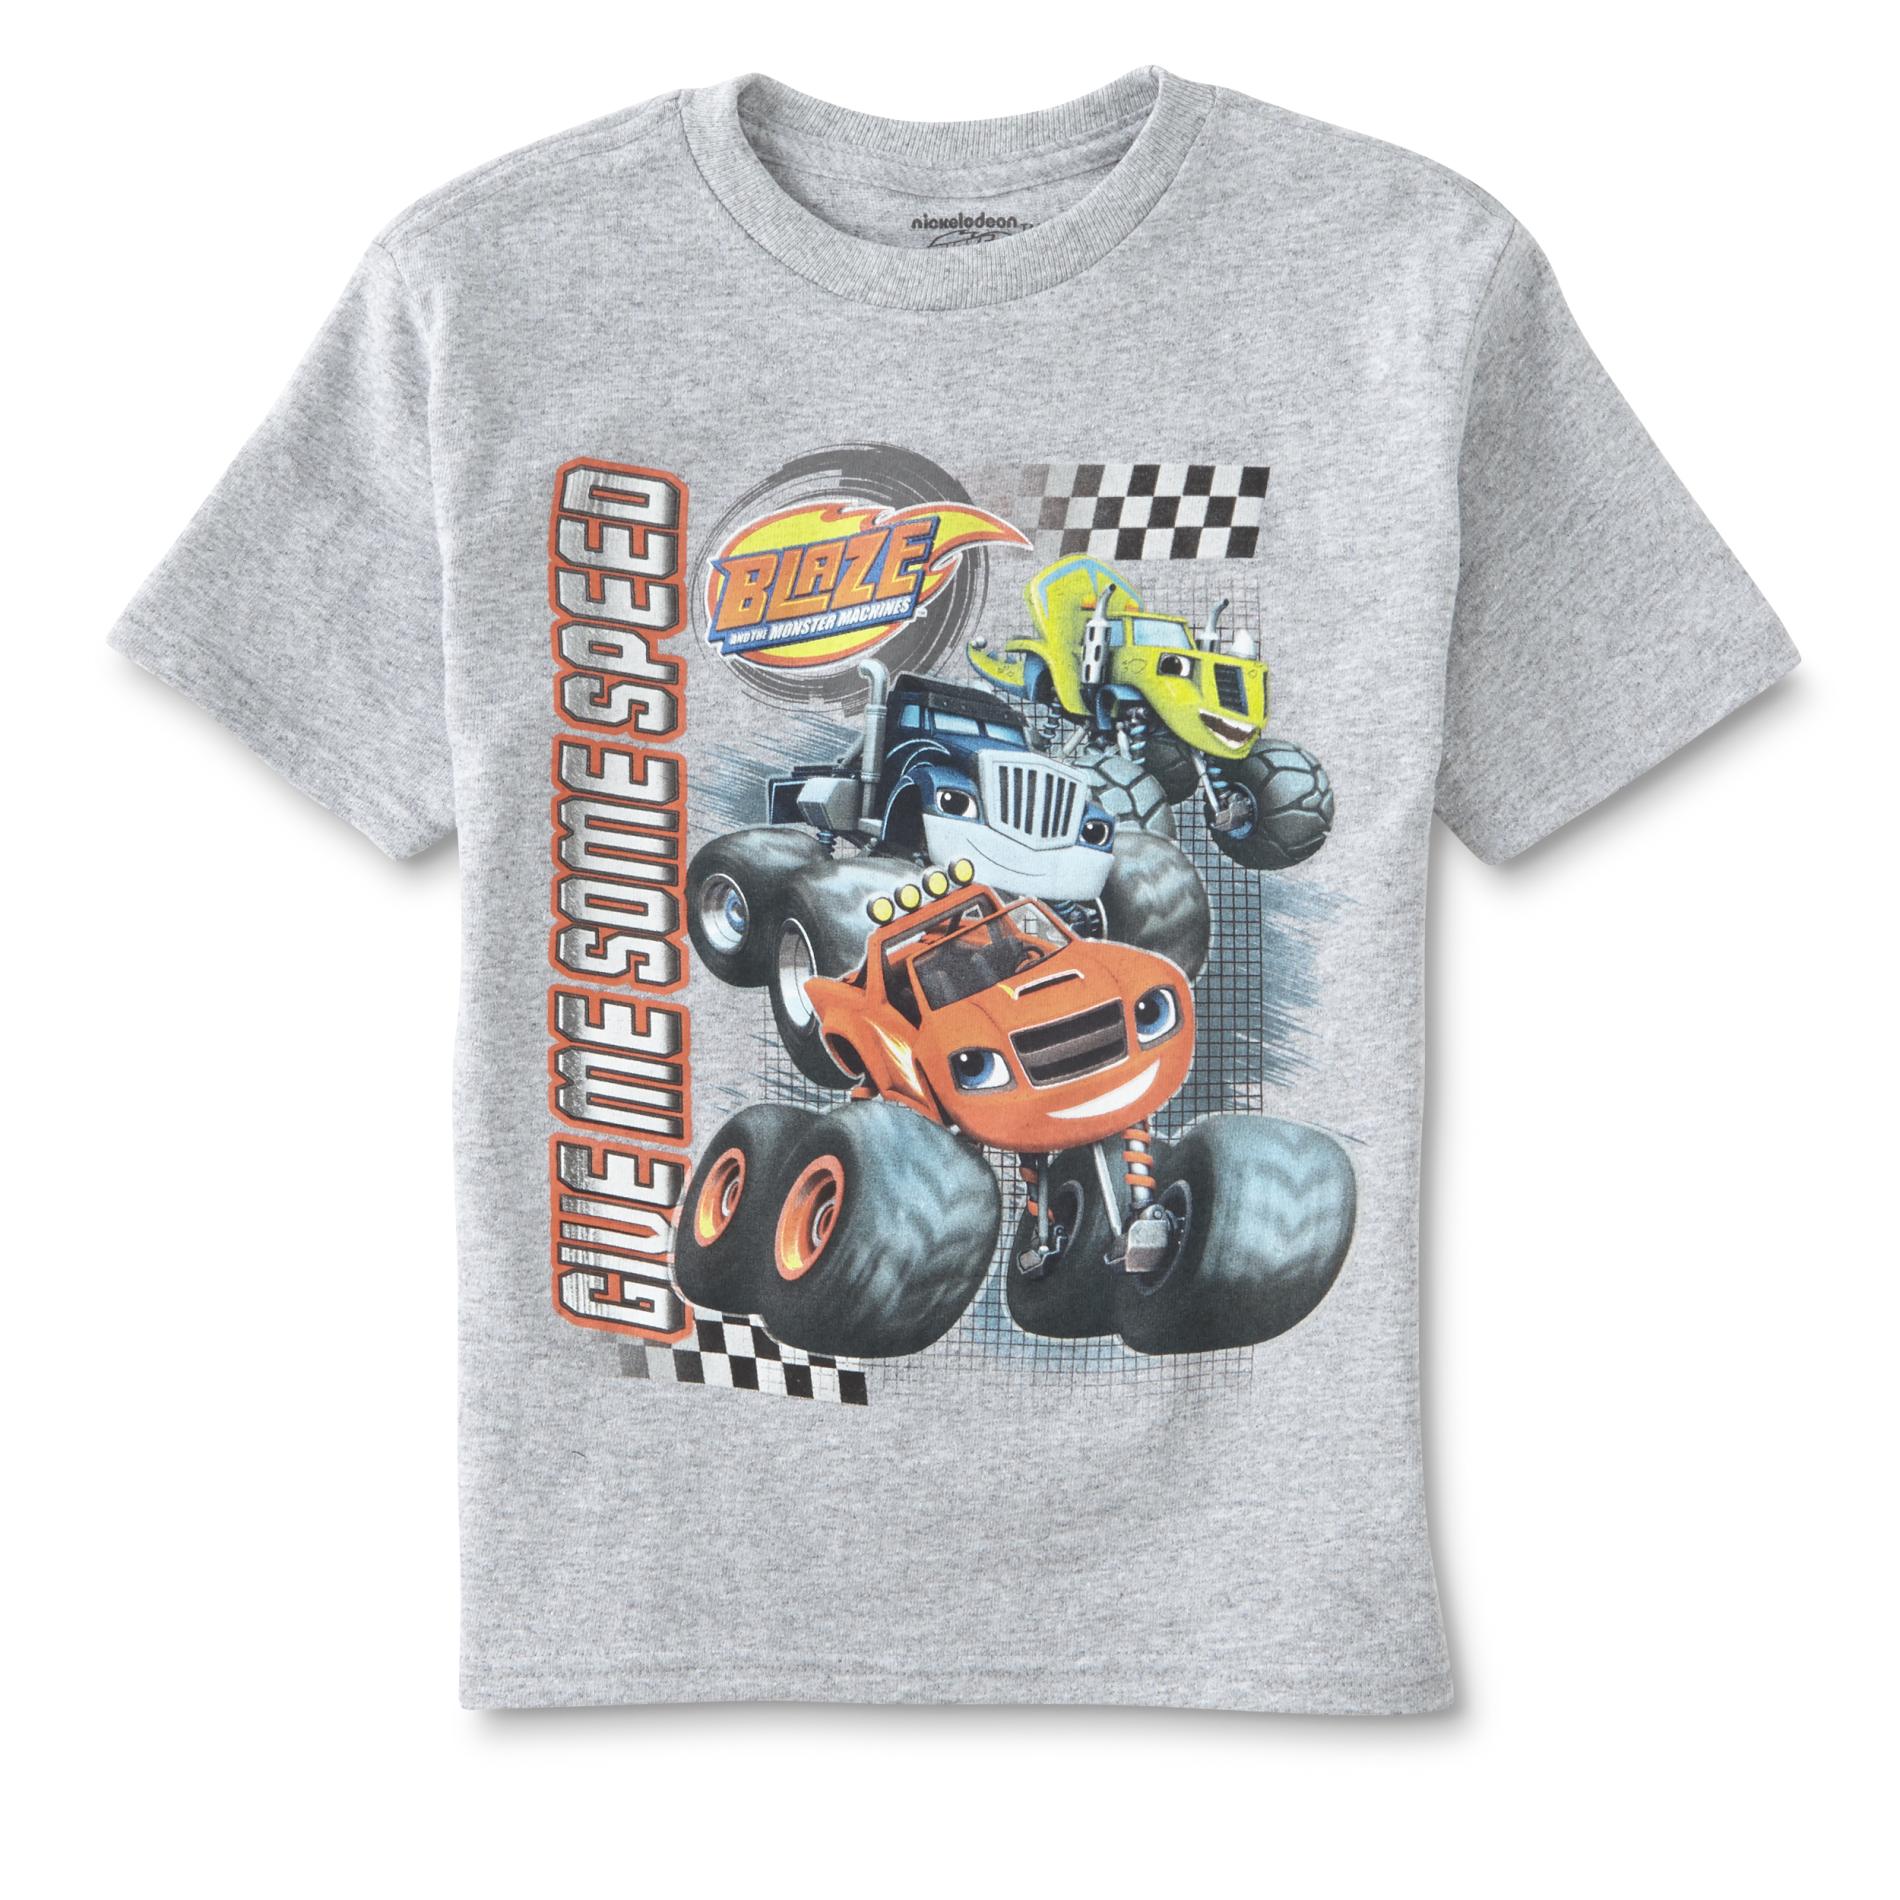 Nickelodeon Blaze & the Monster Machines Boys' Graphic T-Shirt